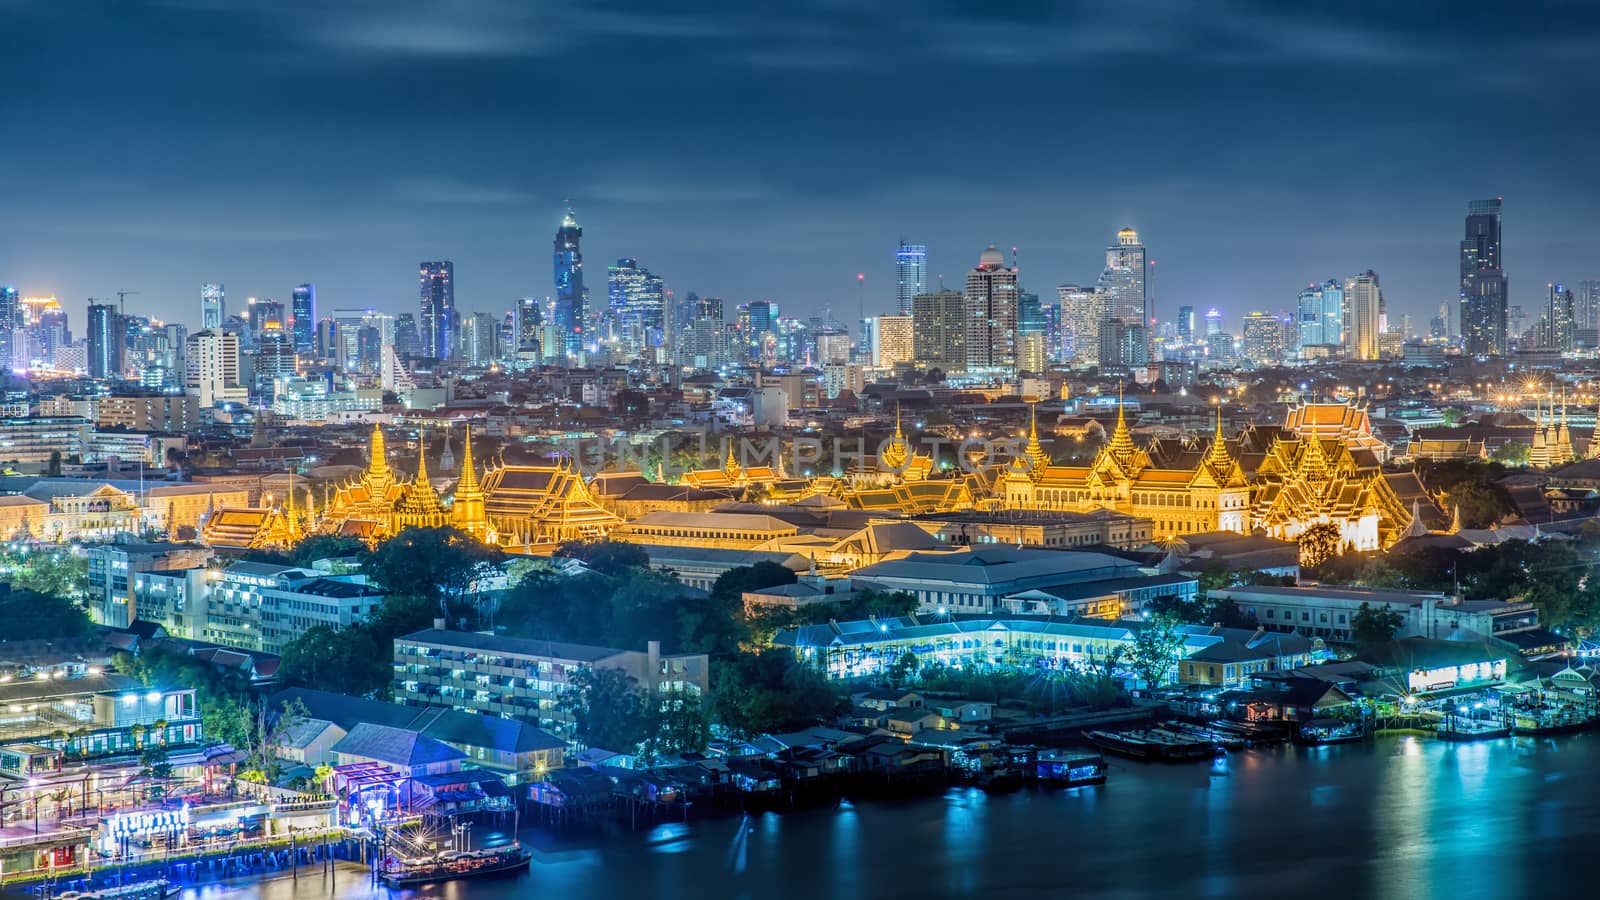 Grand palace at twilight in Bangkok, Thailand
